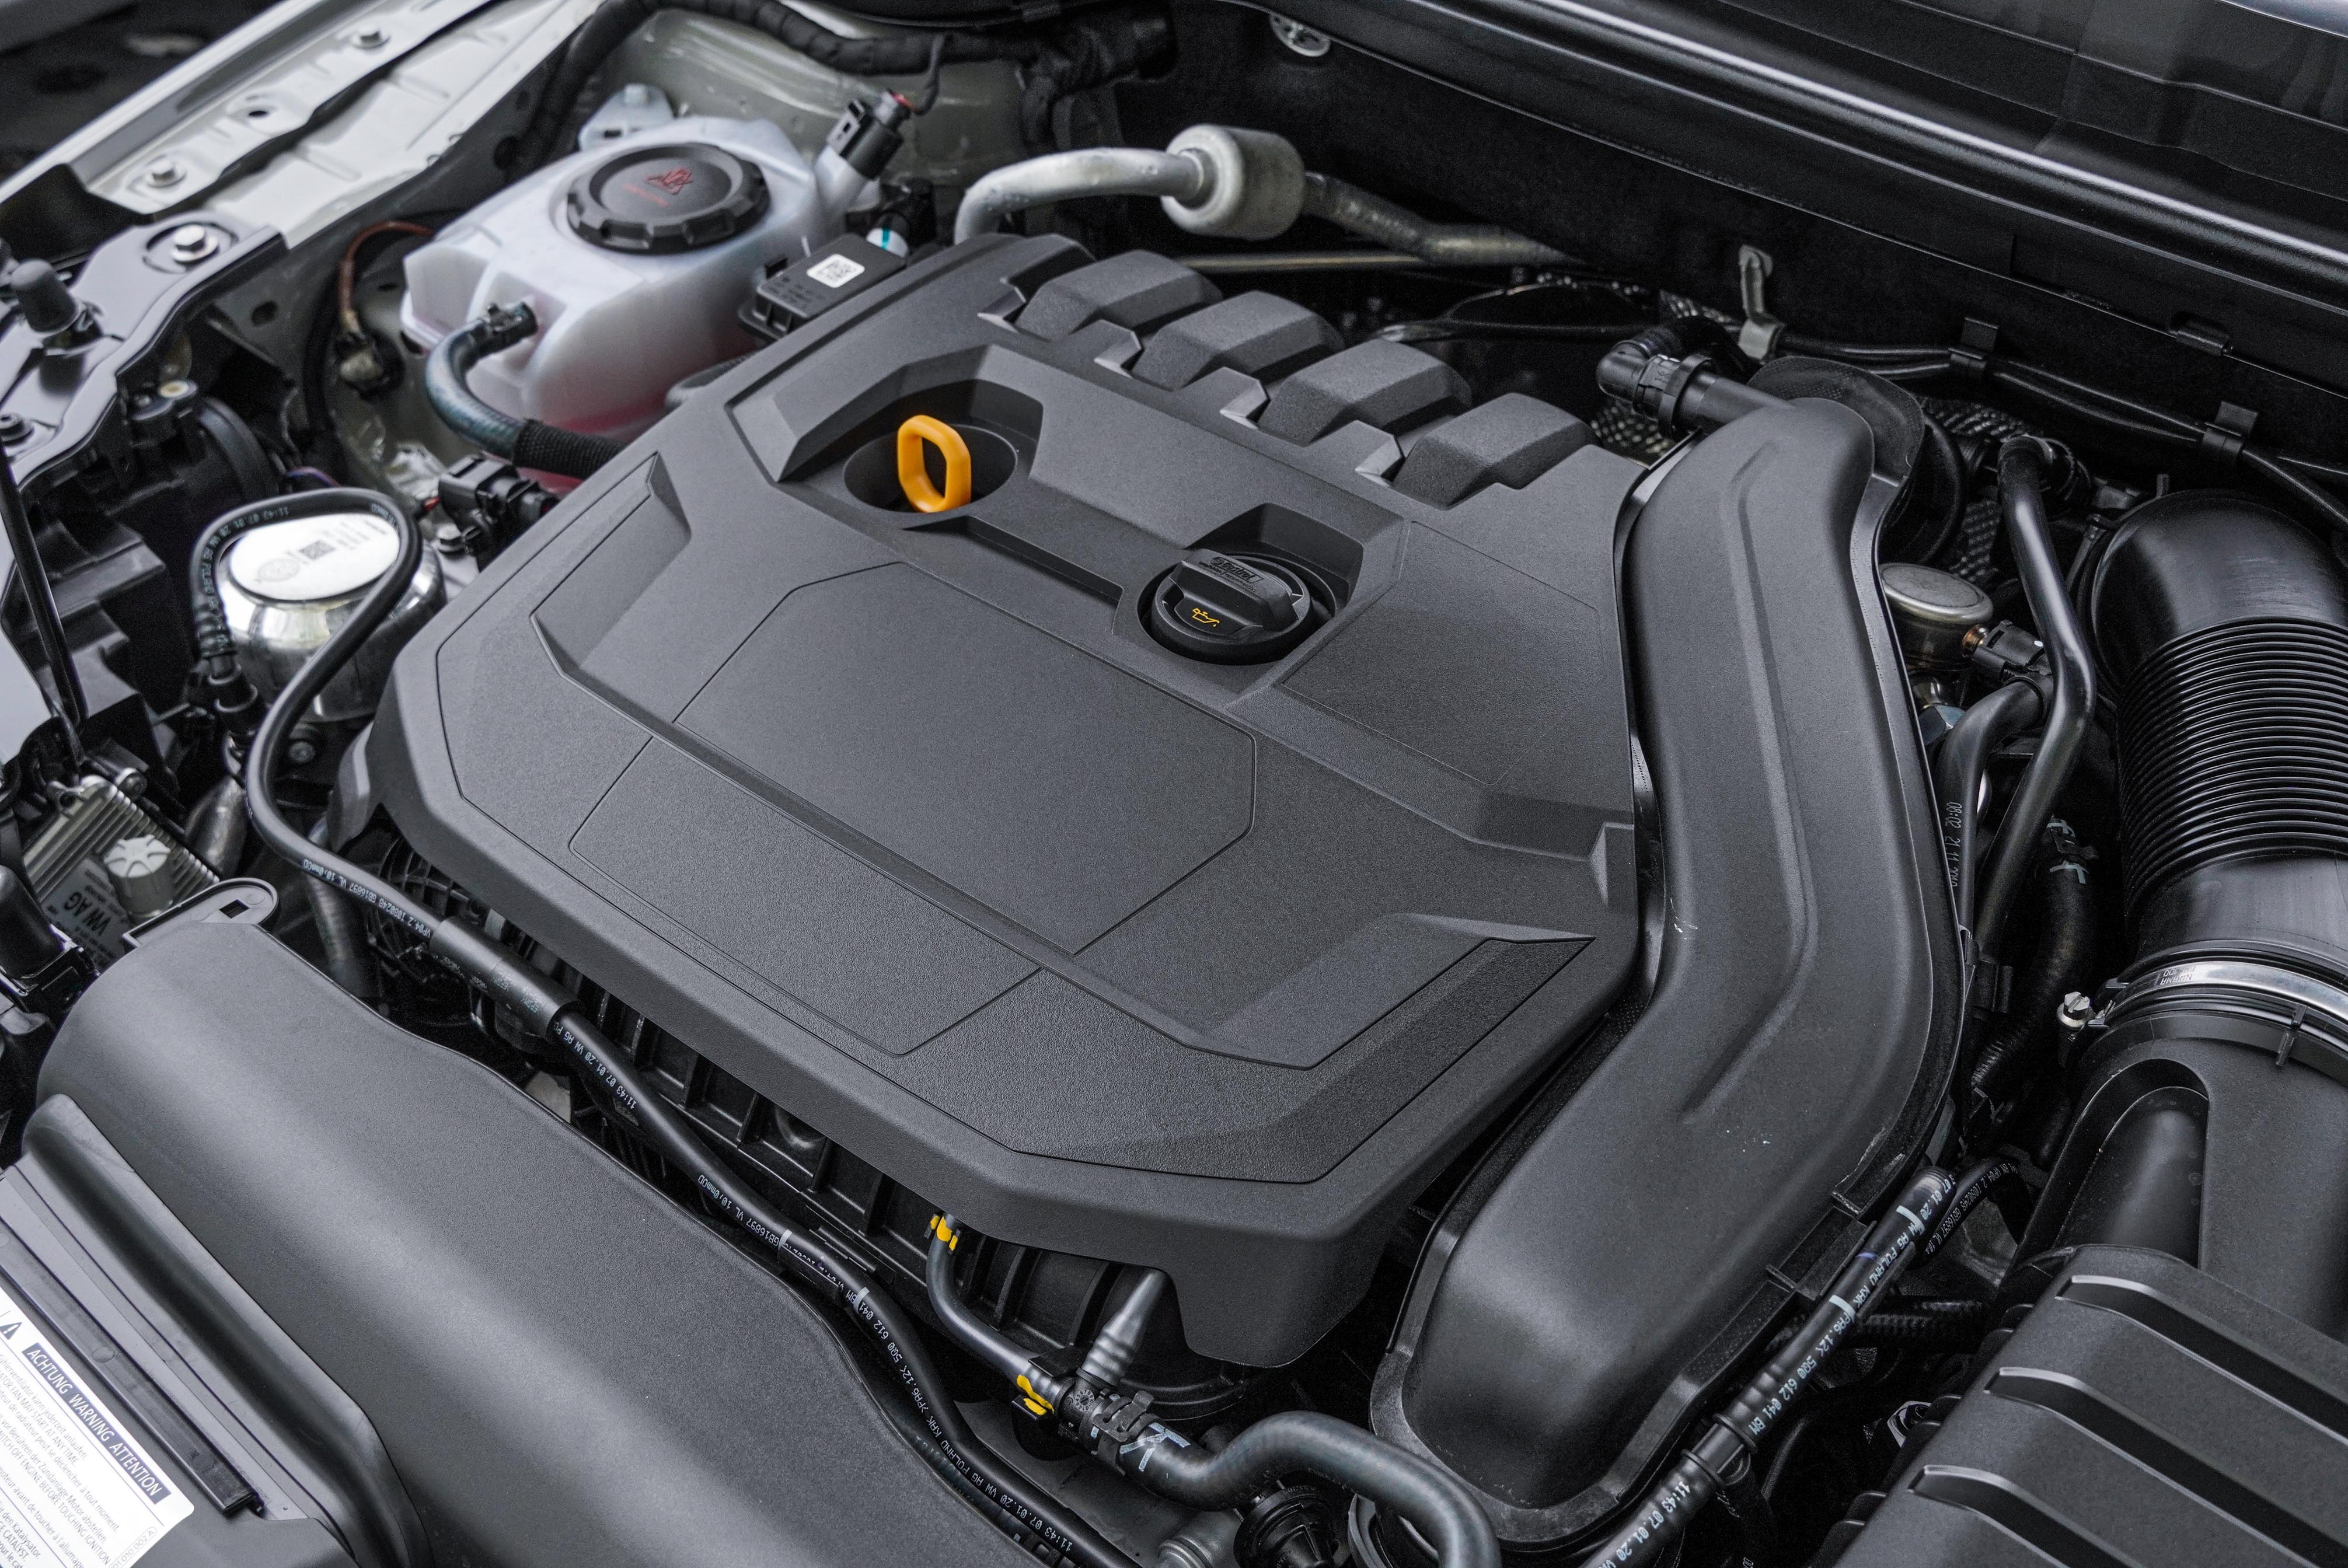 TSI 4 缸渦輪增壓汽油引擎出力為 150 hp@5000-6000 rpm；25.5 kgm@1500-3500 rpm。